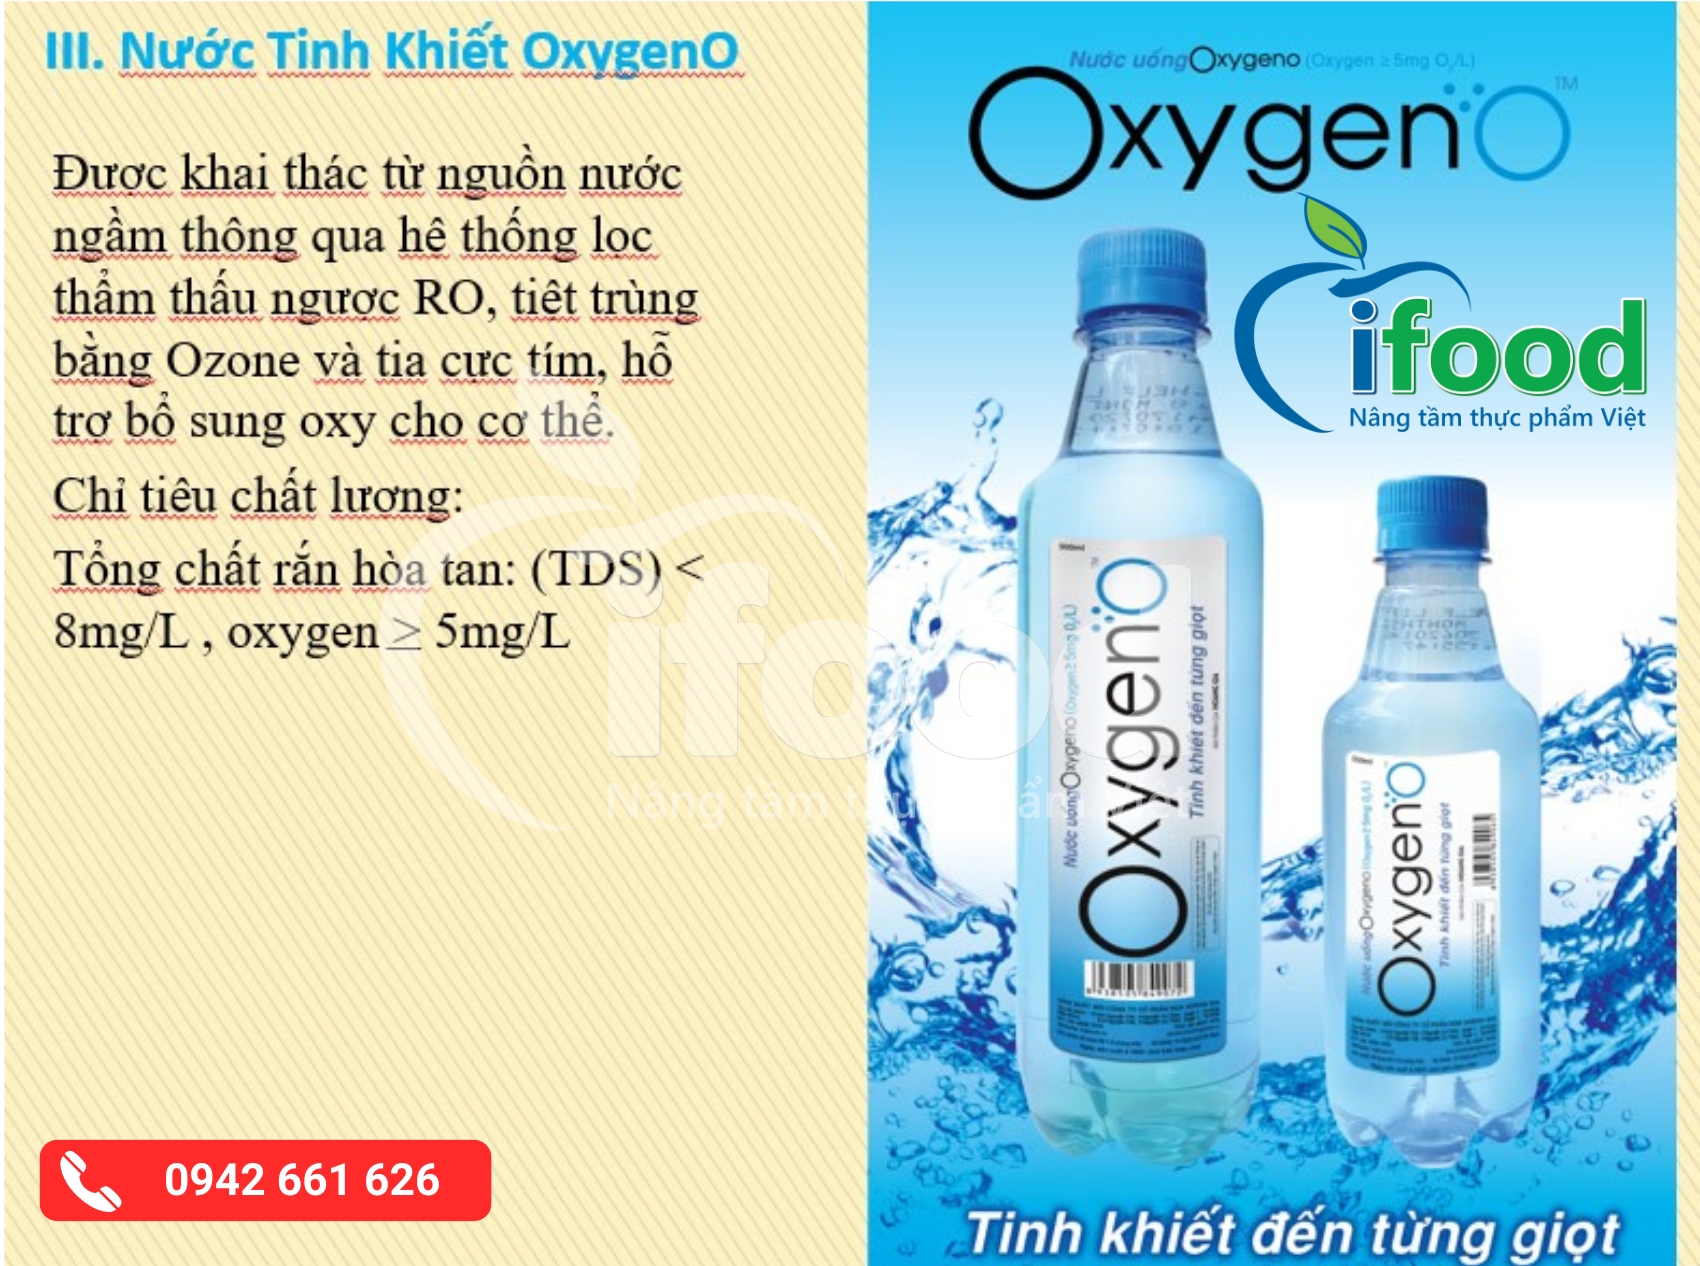 Nước tinh khiết Oxygeno